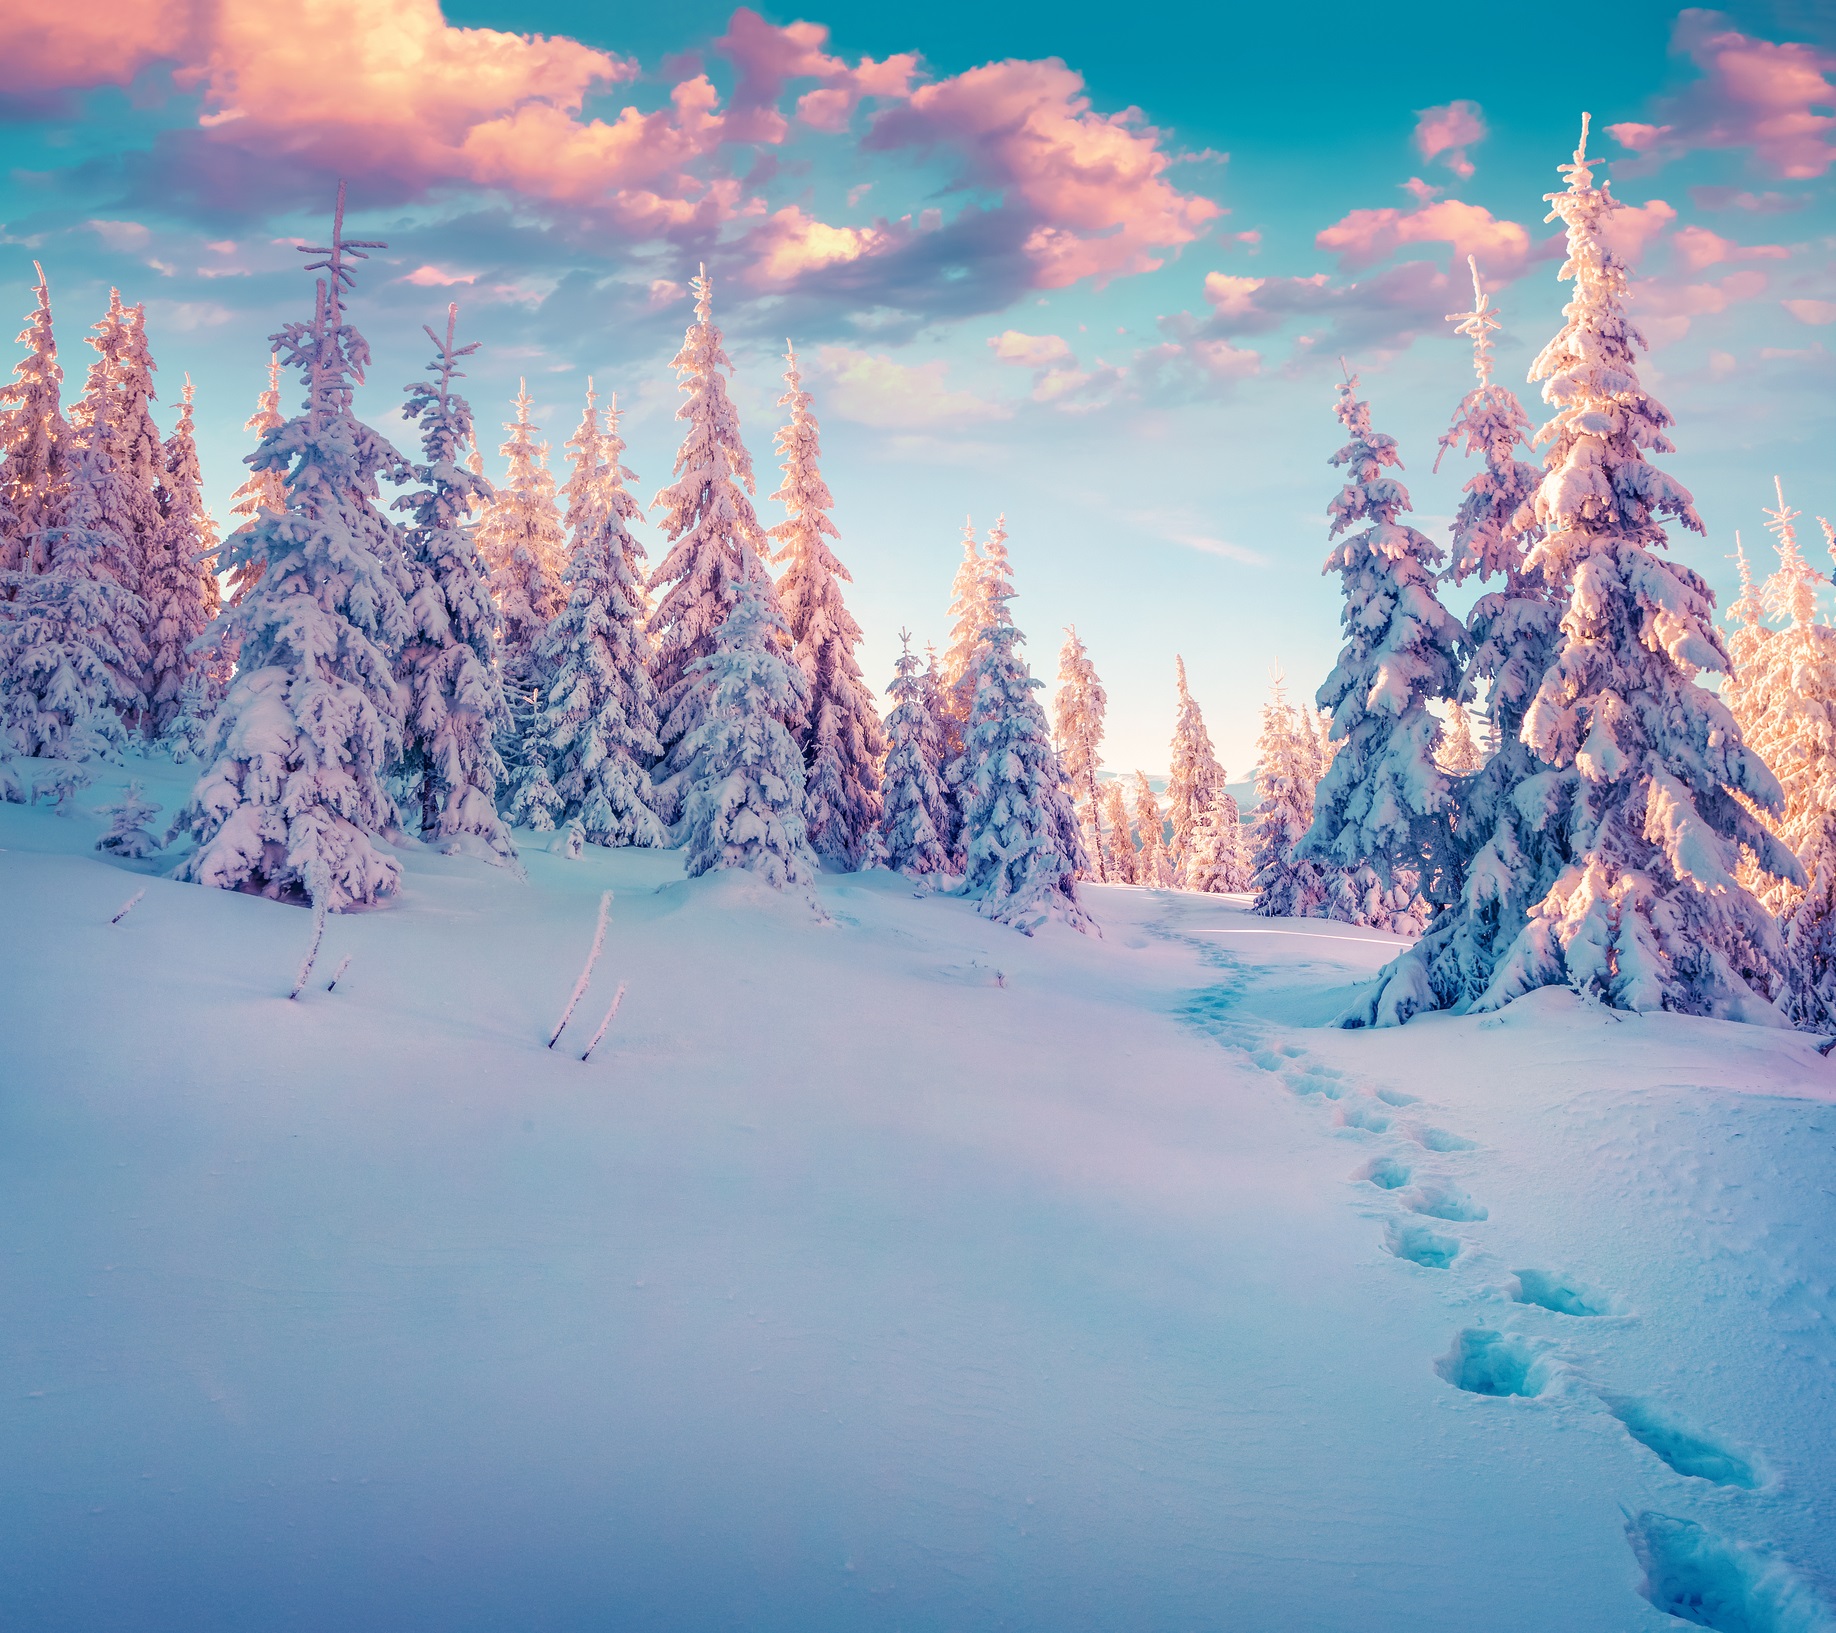 Декември е първият зимен месец, но освен сняг и студено време, той ни носи и много красота. Кара ни да оценим топлината и уюта на семейното огнище.